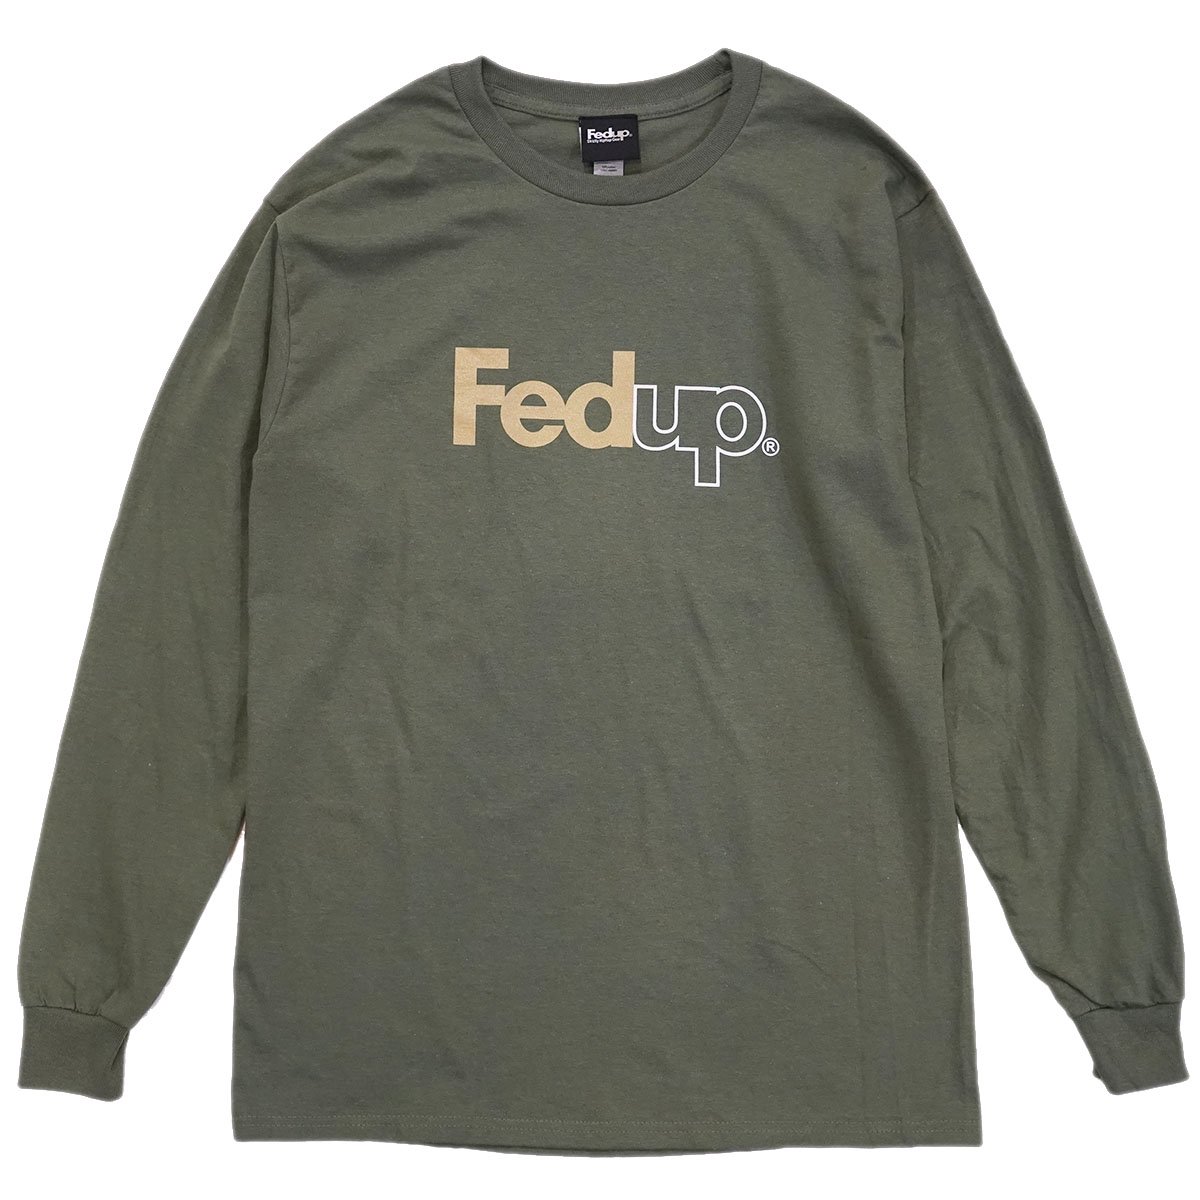 Fedup (フェドアップ) ロンT, ロングスリーブTシャツの取り扱い店舗 ...